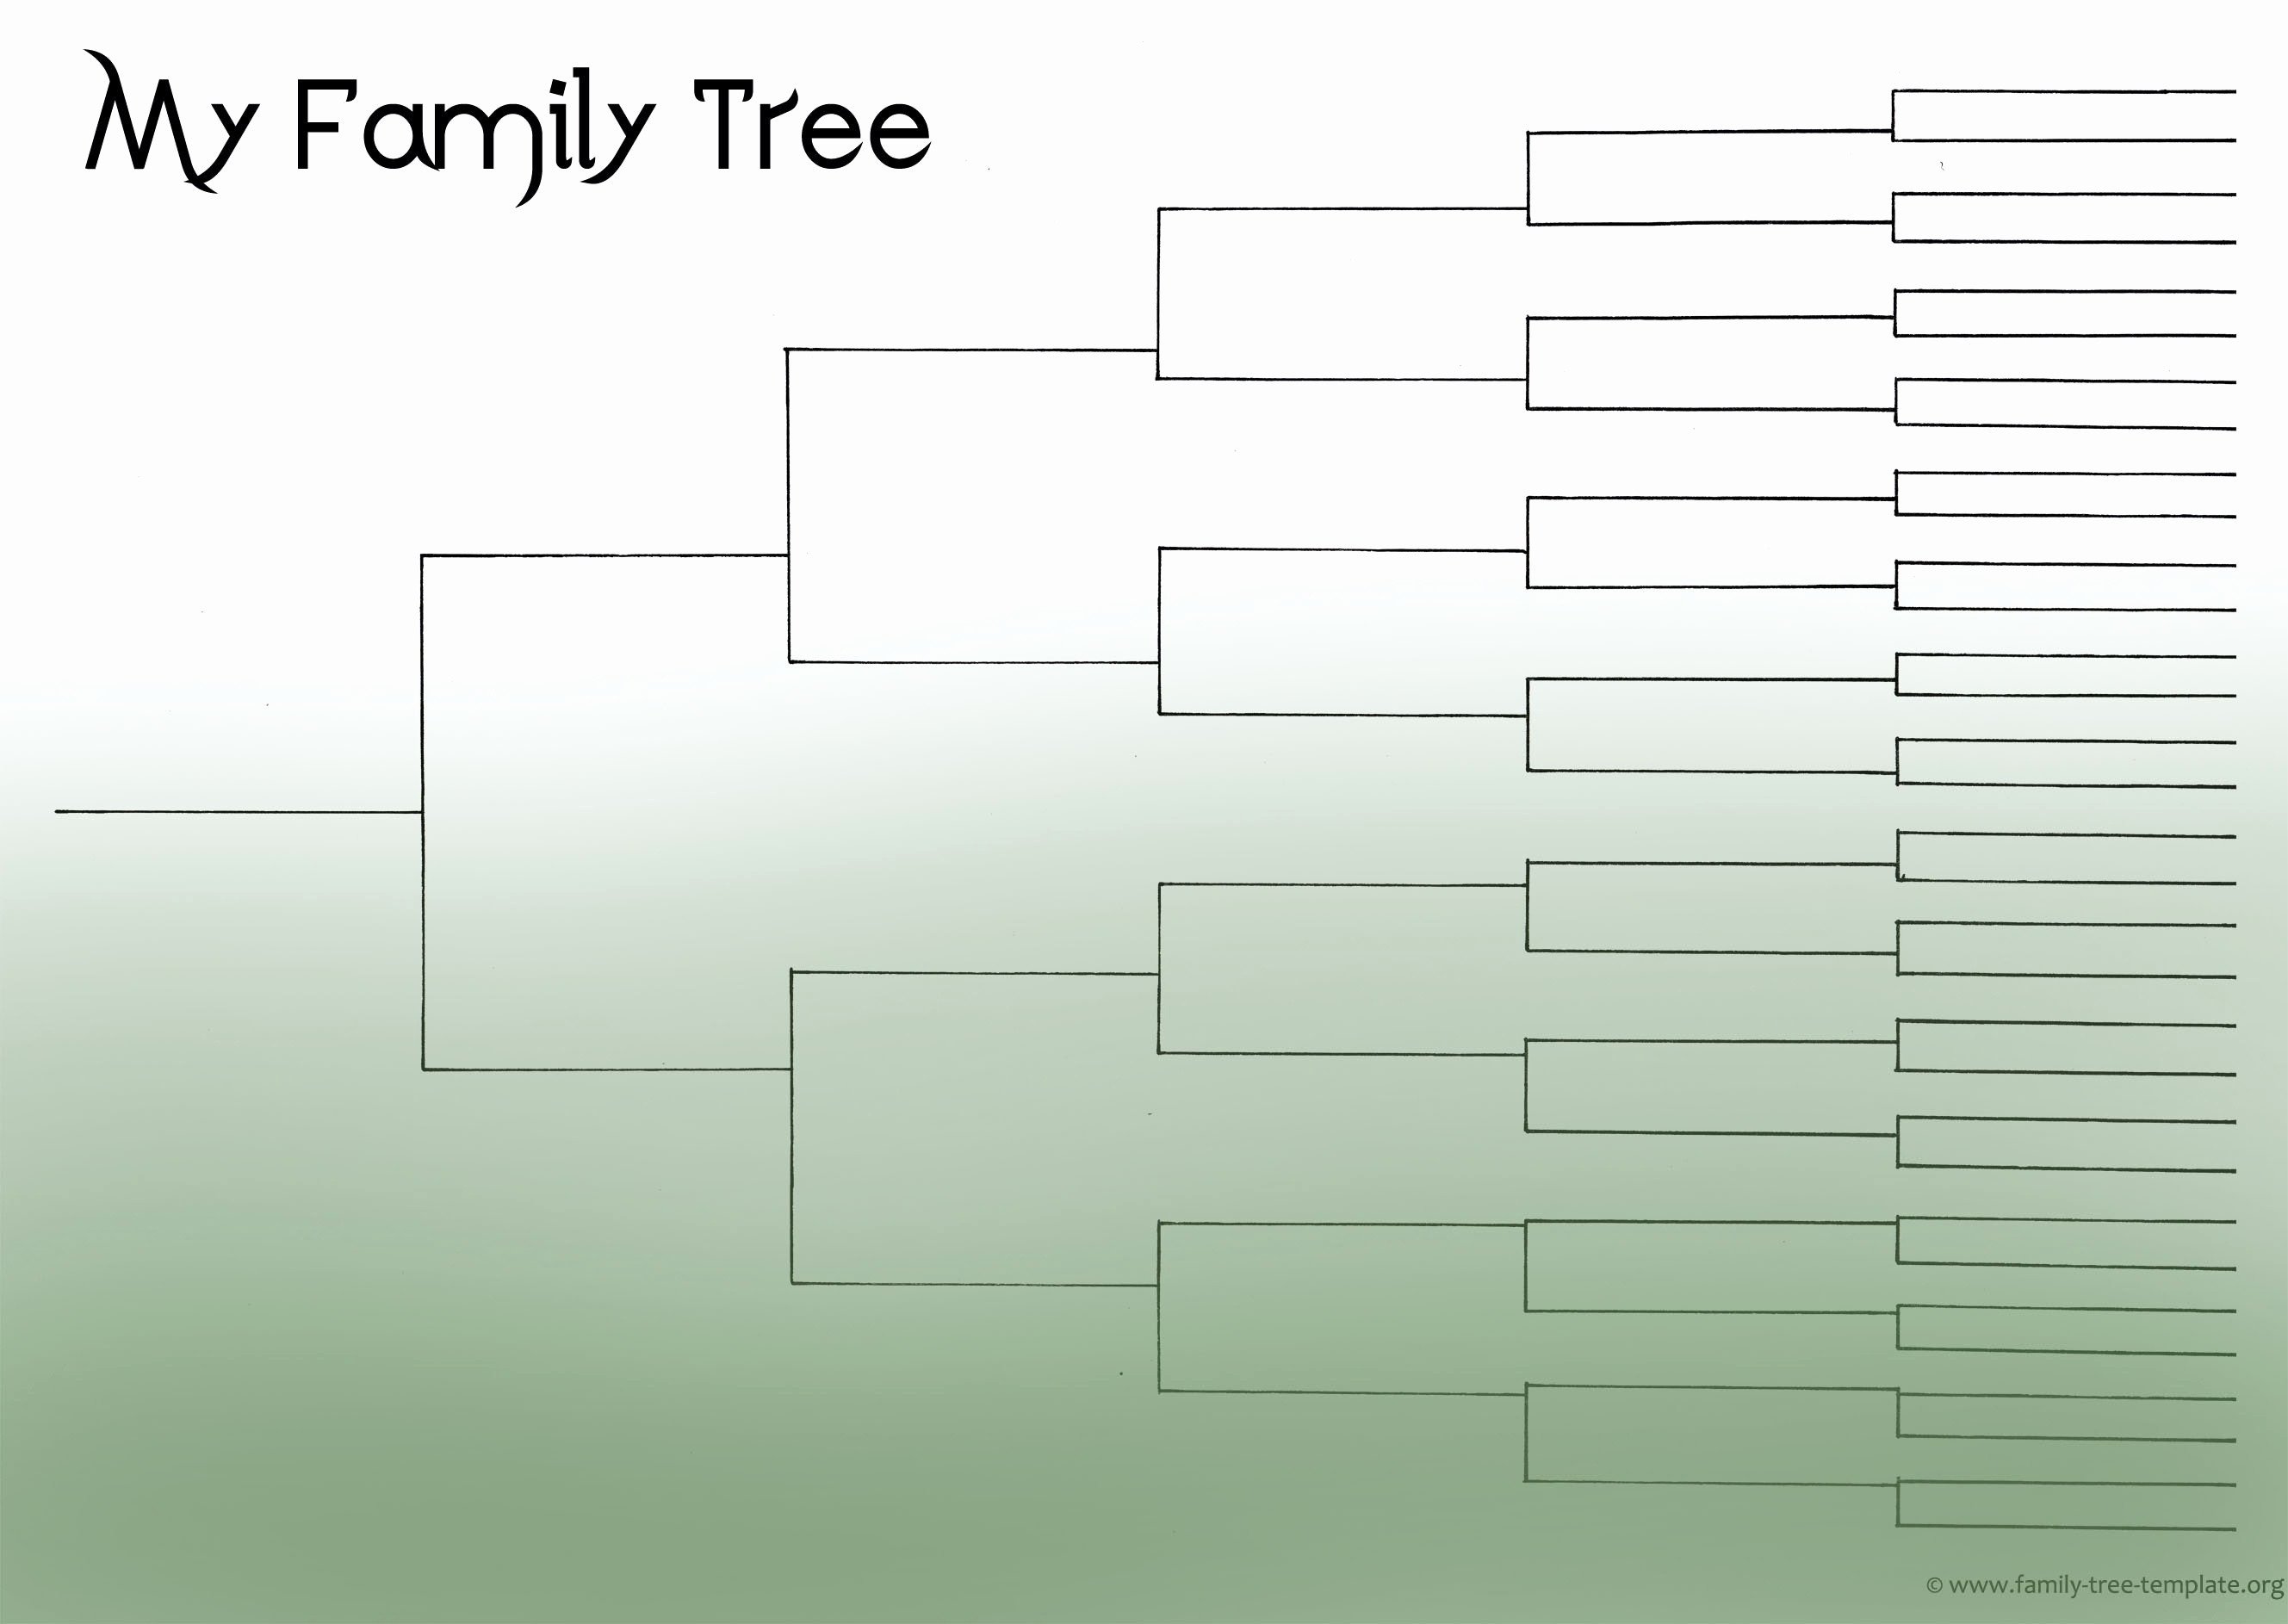 Family Tree Template Google Docs Family Tree Template Google Docs